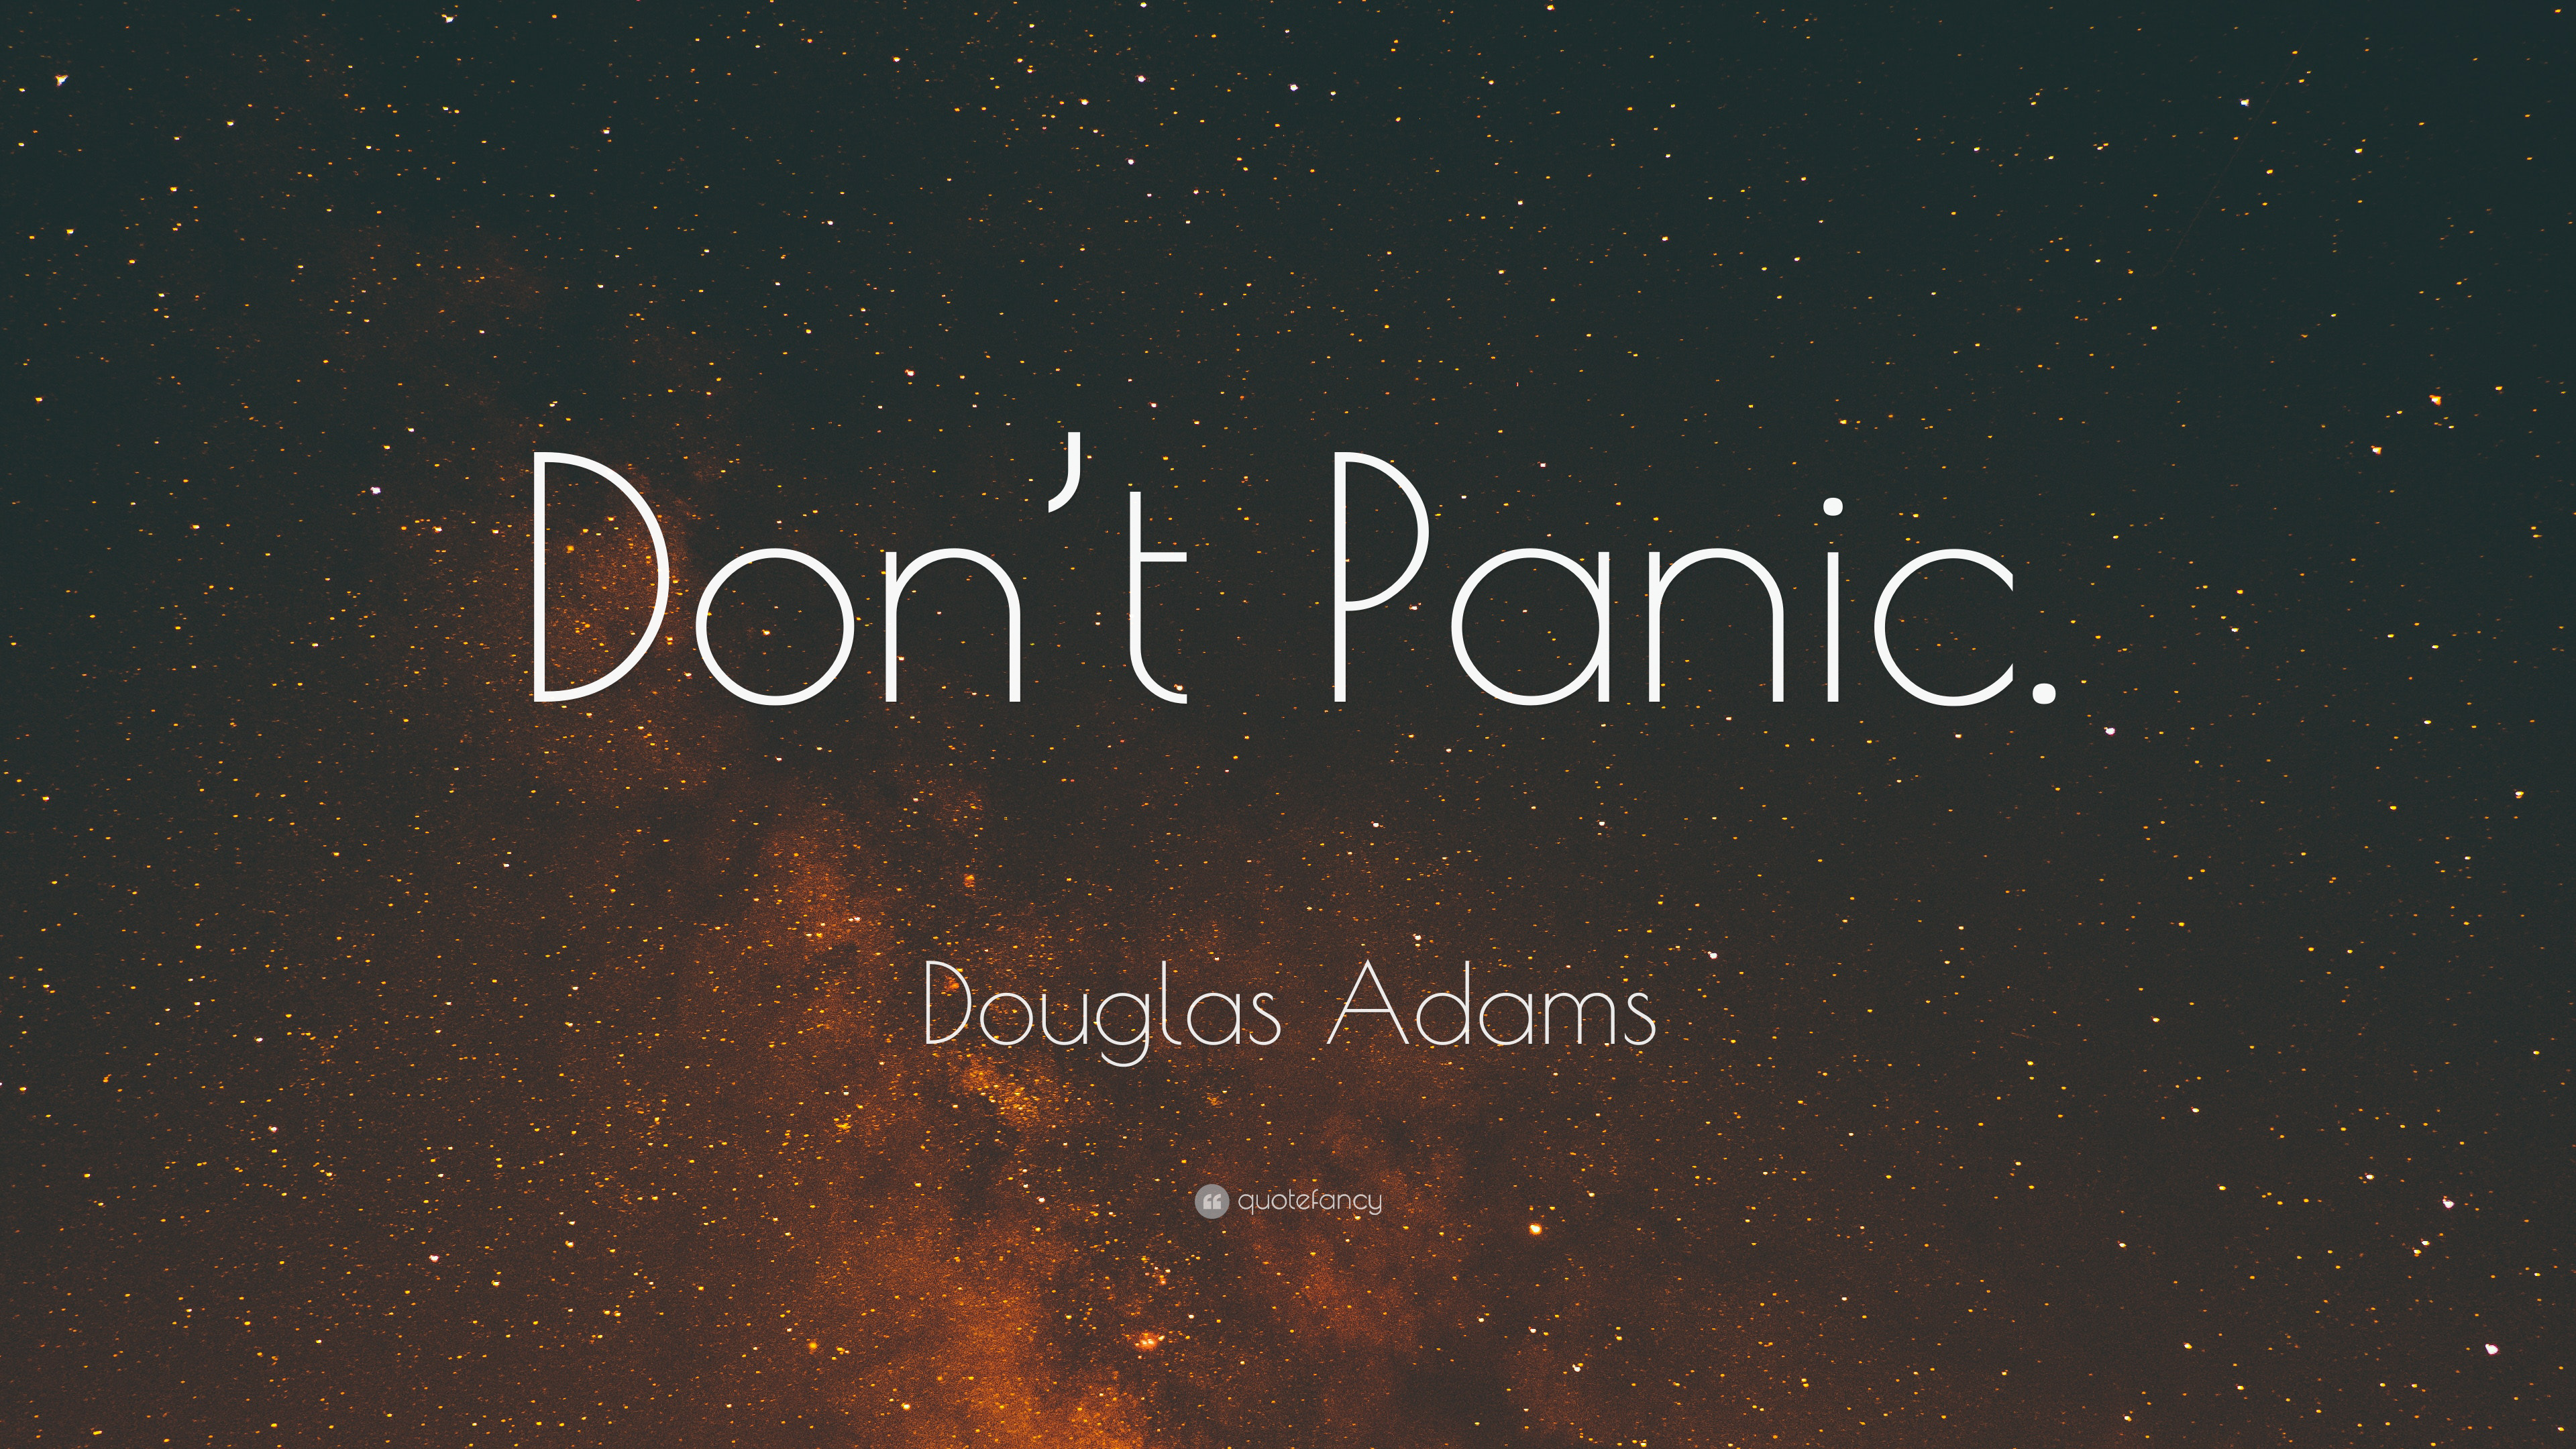 Douglas Adams Quotes (2021 Update)